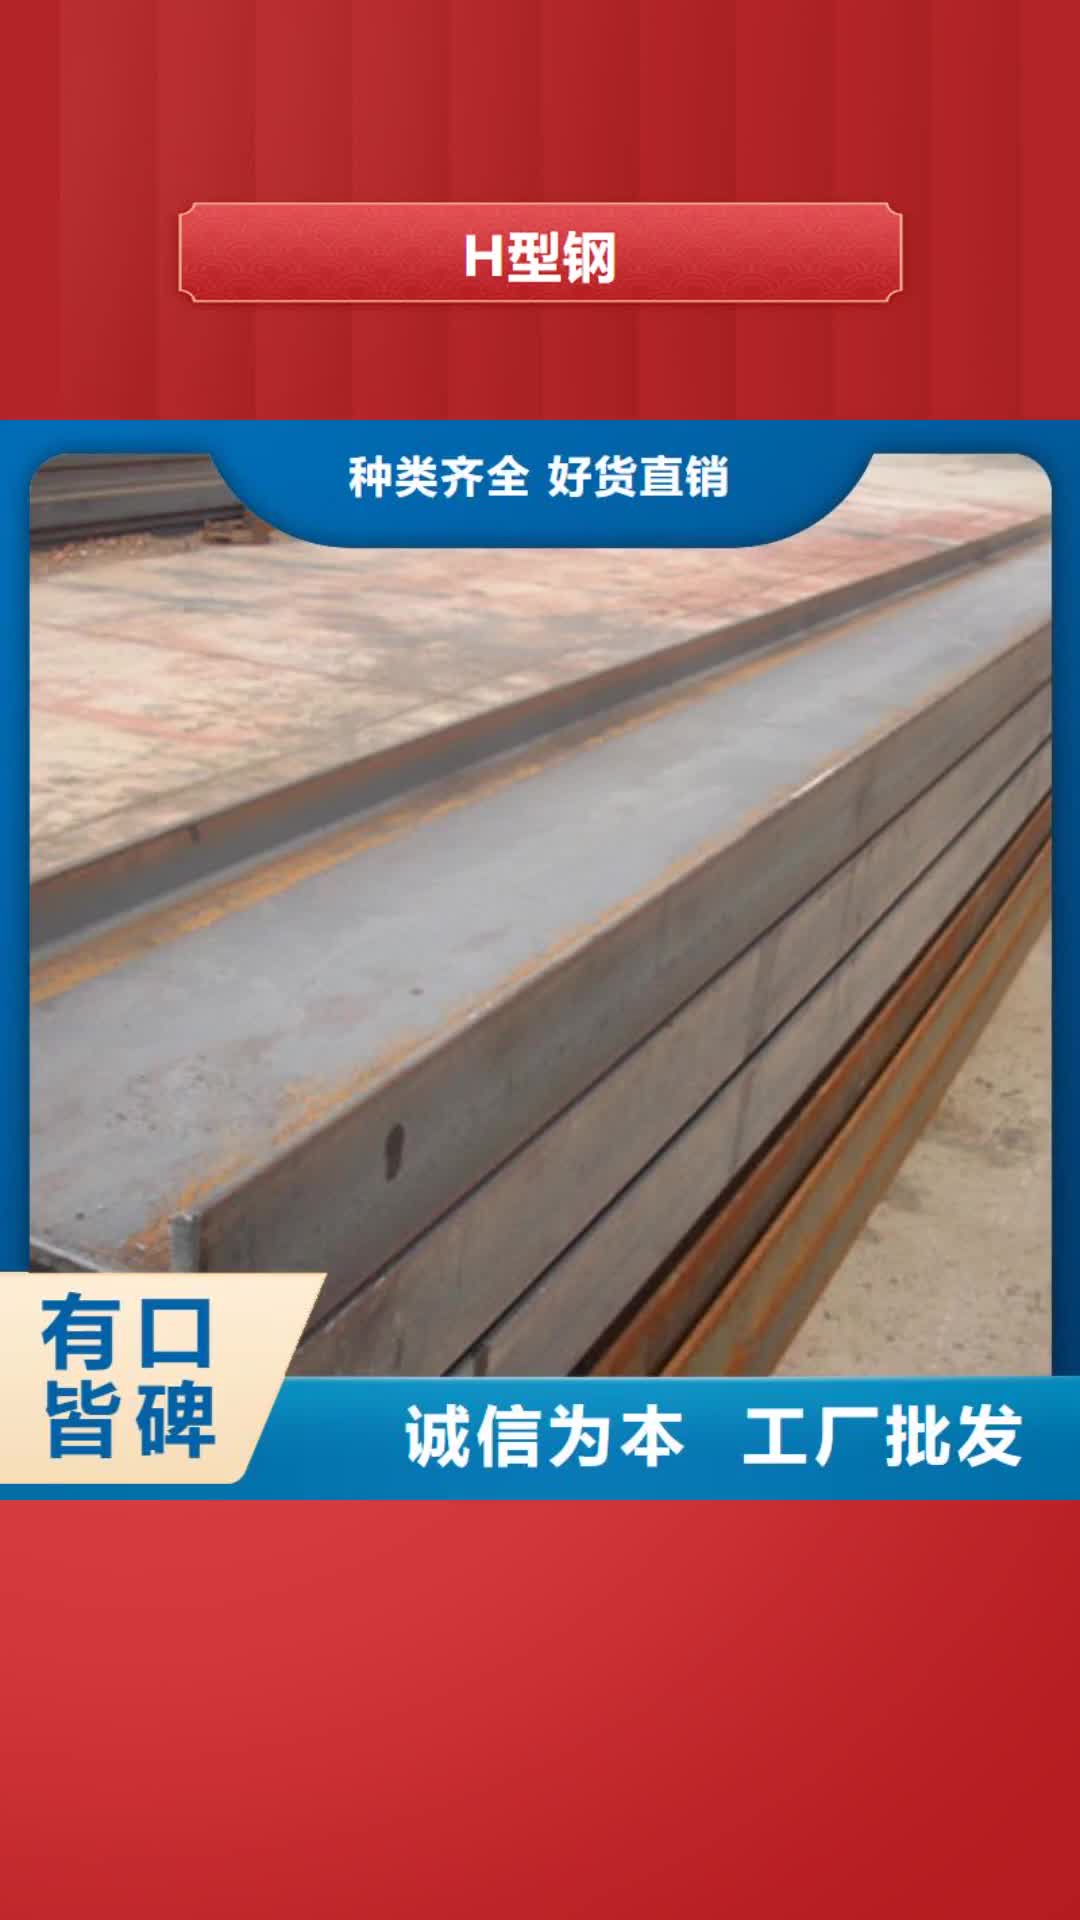 三明【H型钢】,热镀锌角钢 符合行业标准